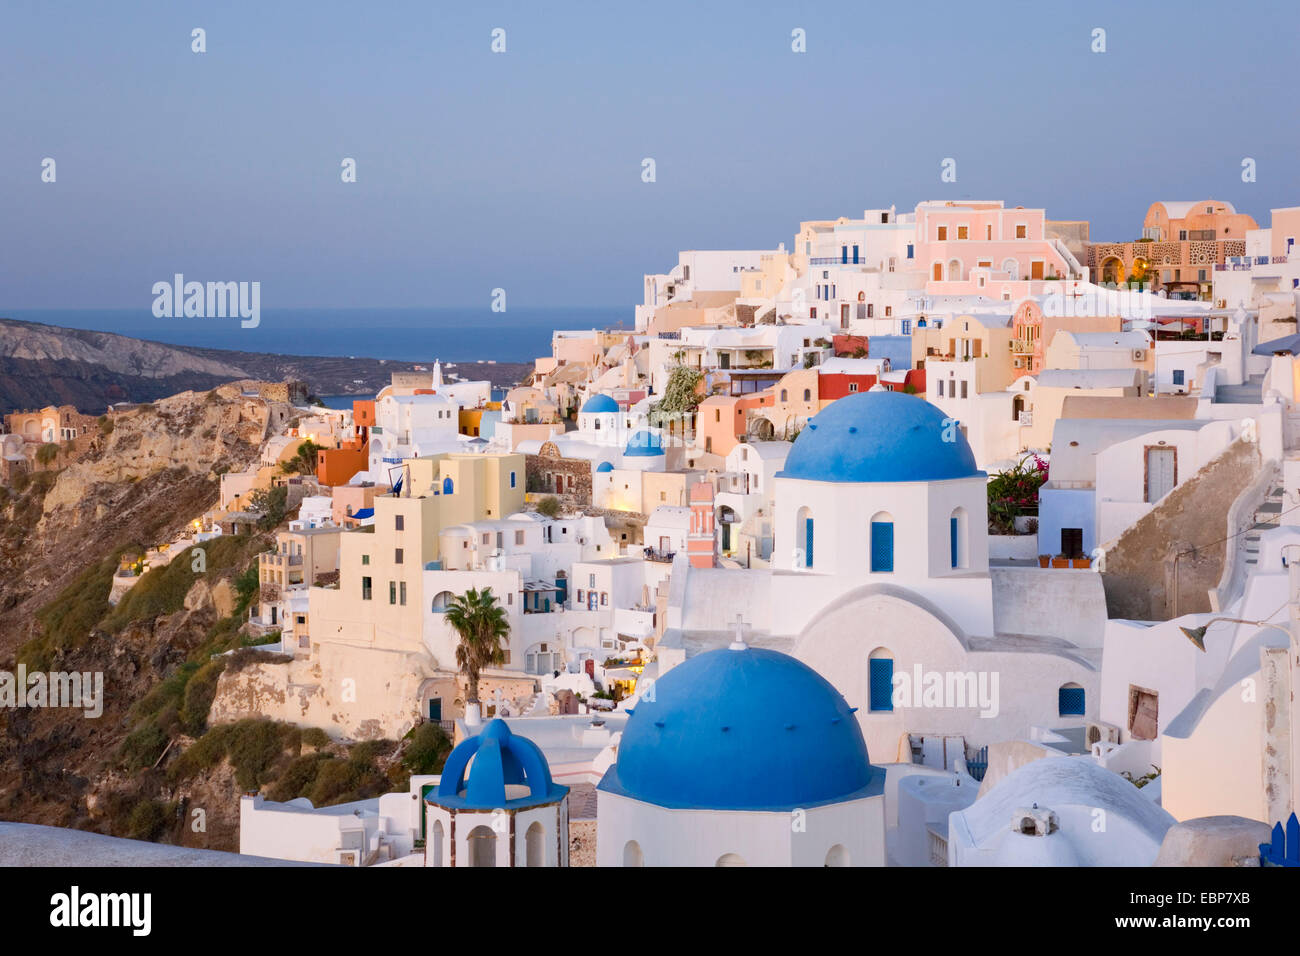 IA, Santorini, südliche Ägäis, Griechenland. Das Dorf in der Morgendämmerung, typische blaue Kuppel Kirchen Prominente. Stockfoto